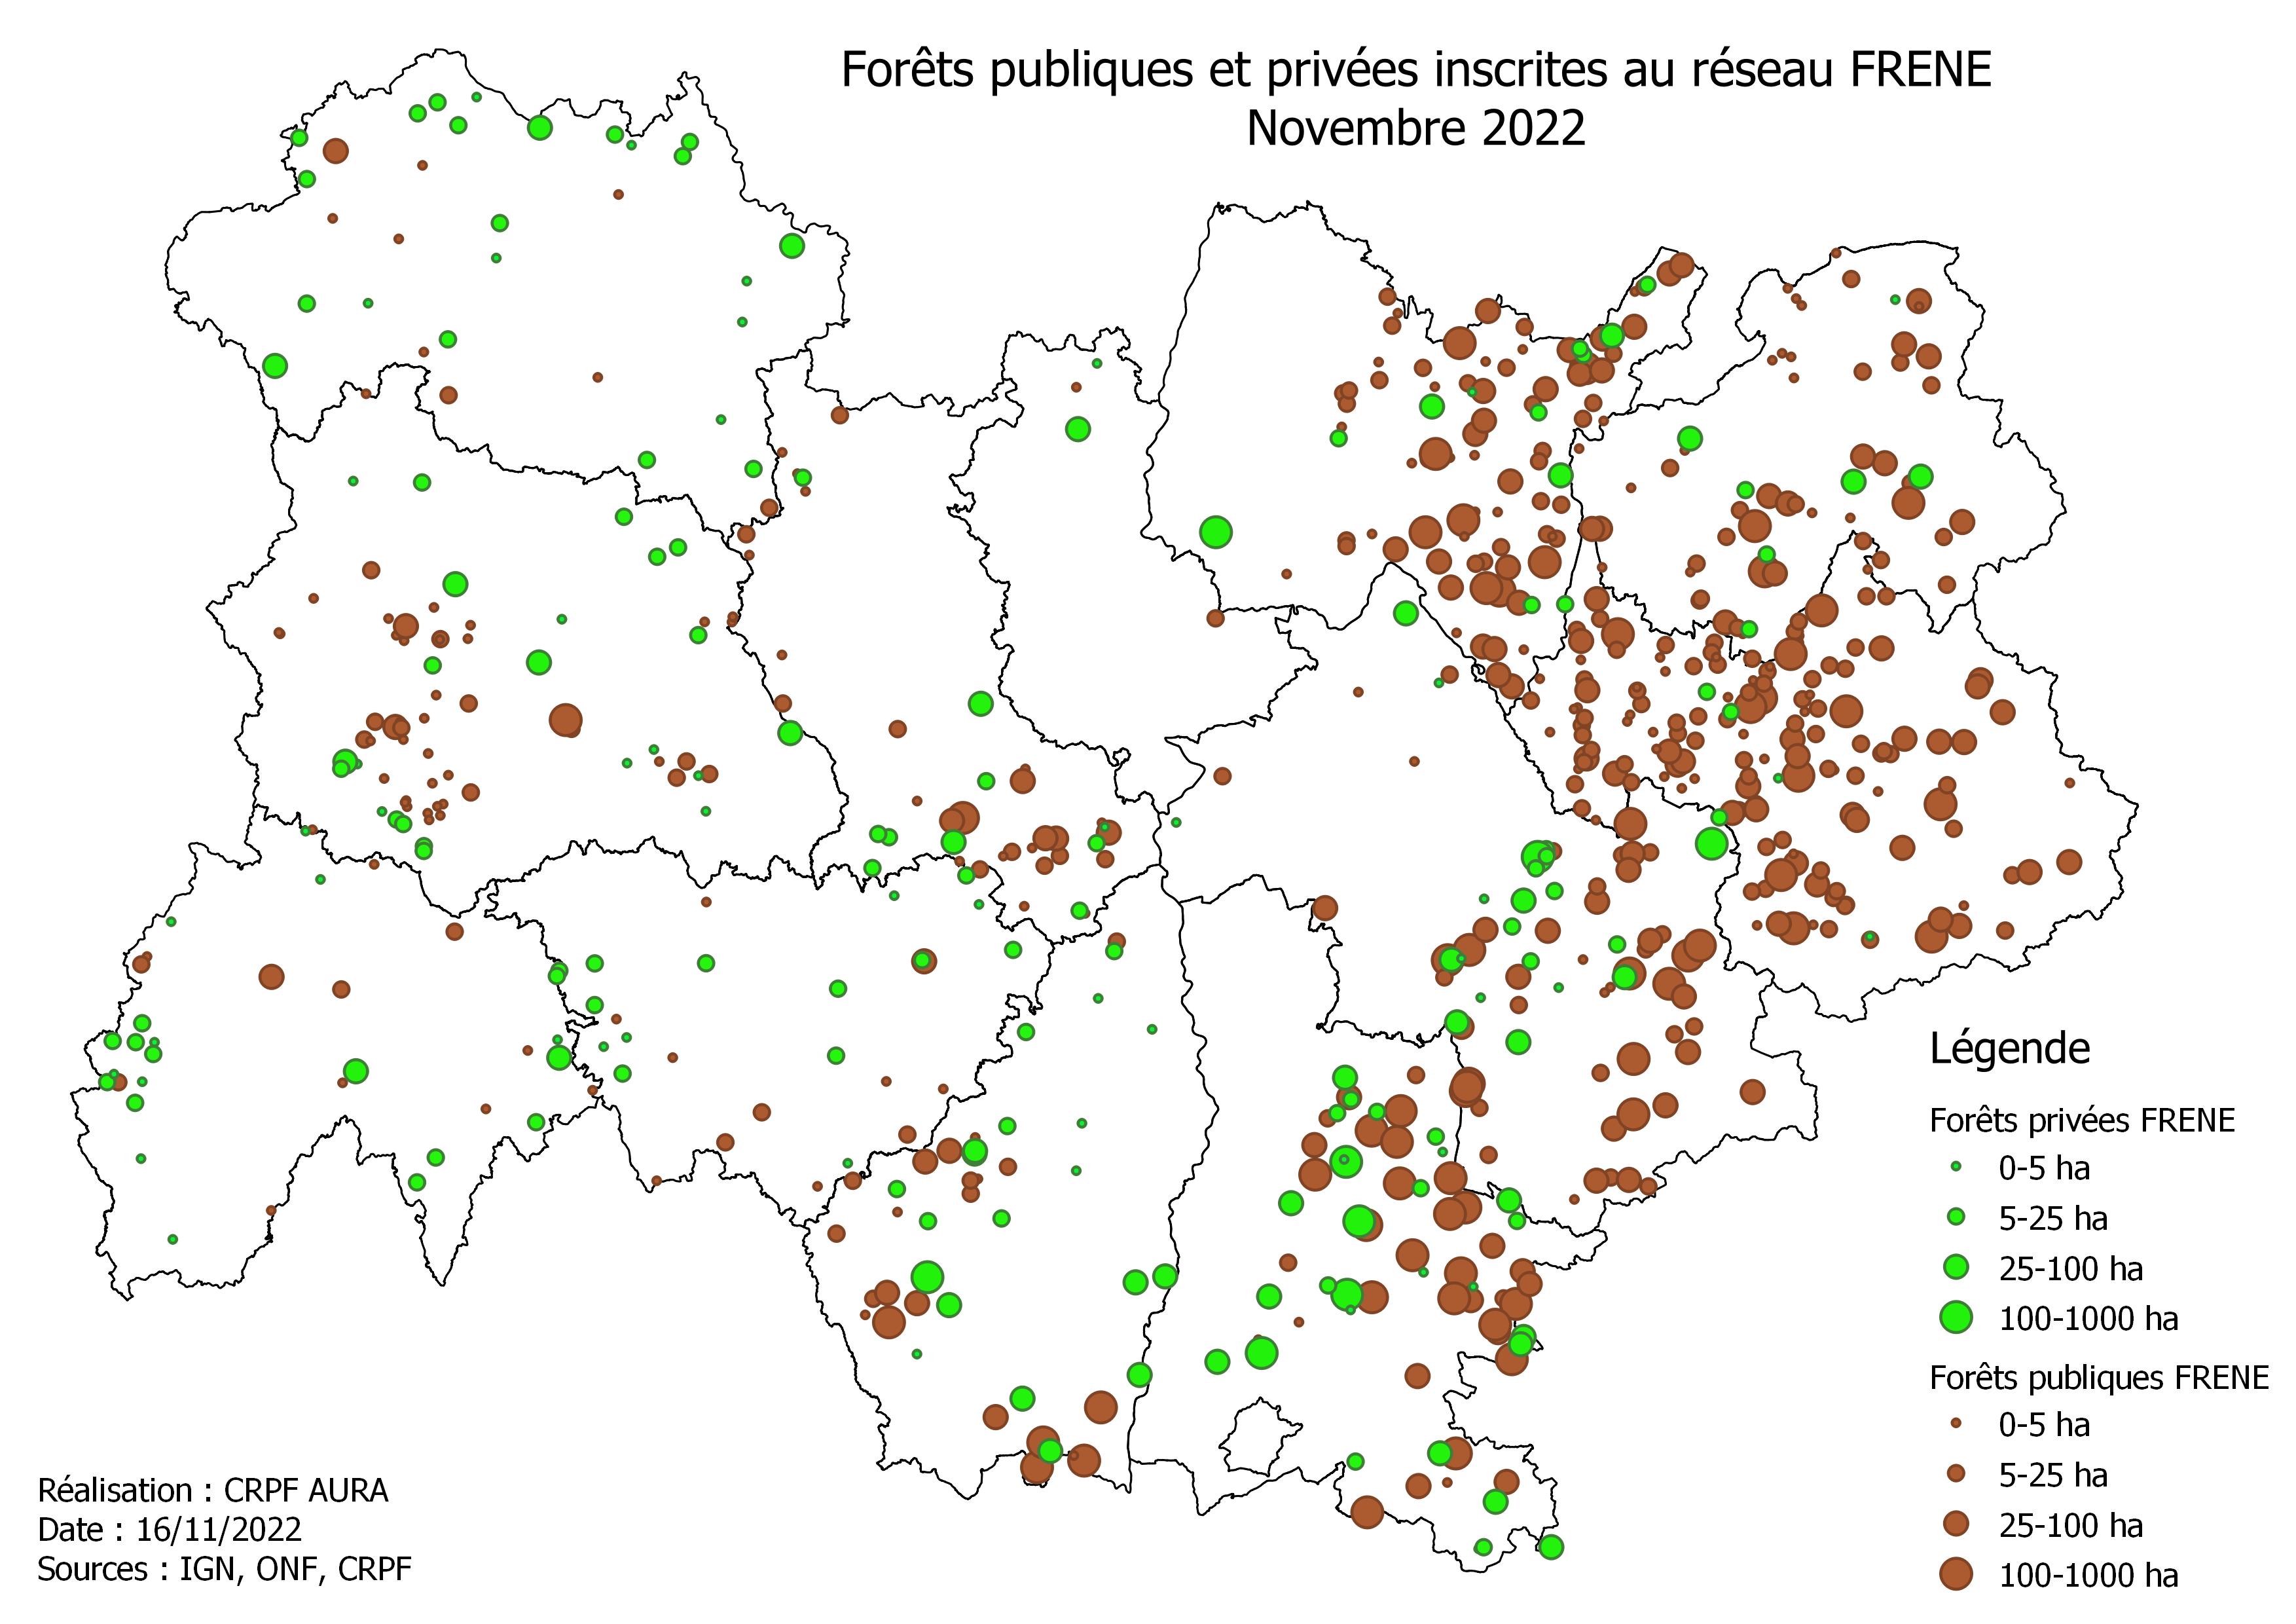 Représentation de la répartition des peuplements publics et privés du réseau FRENE d'Auvergne Rhône-Alpes